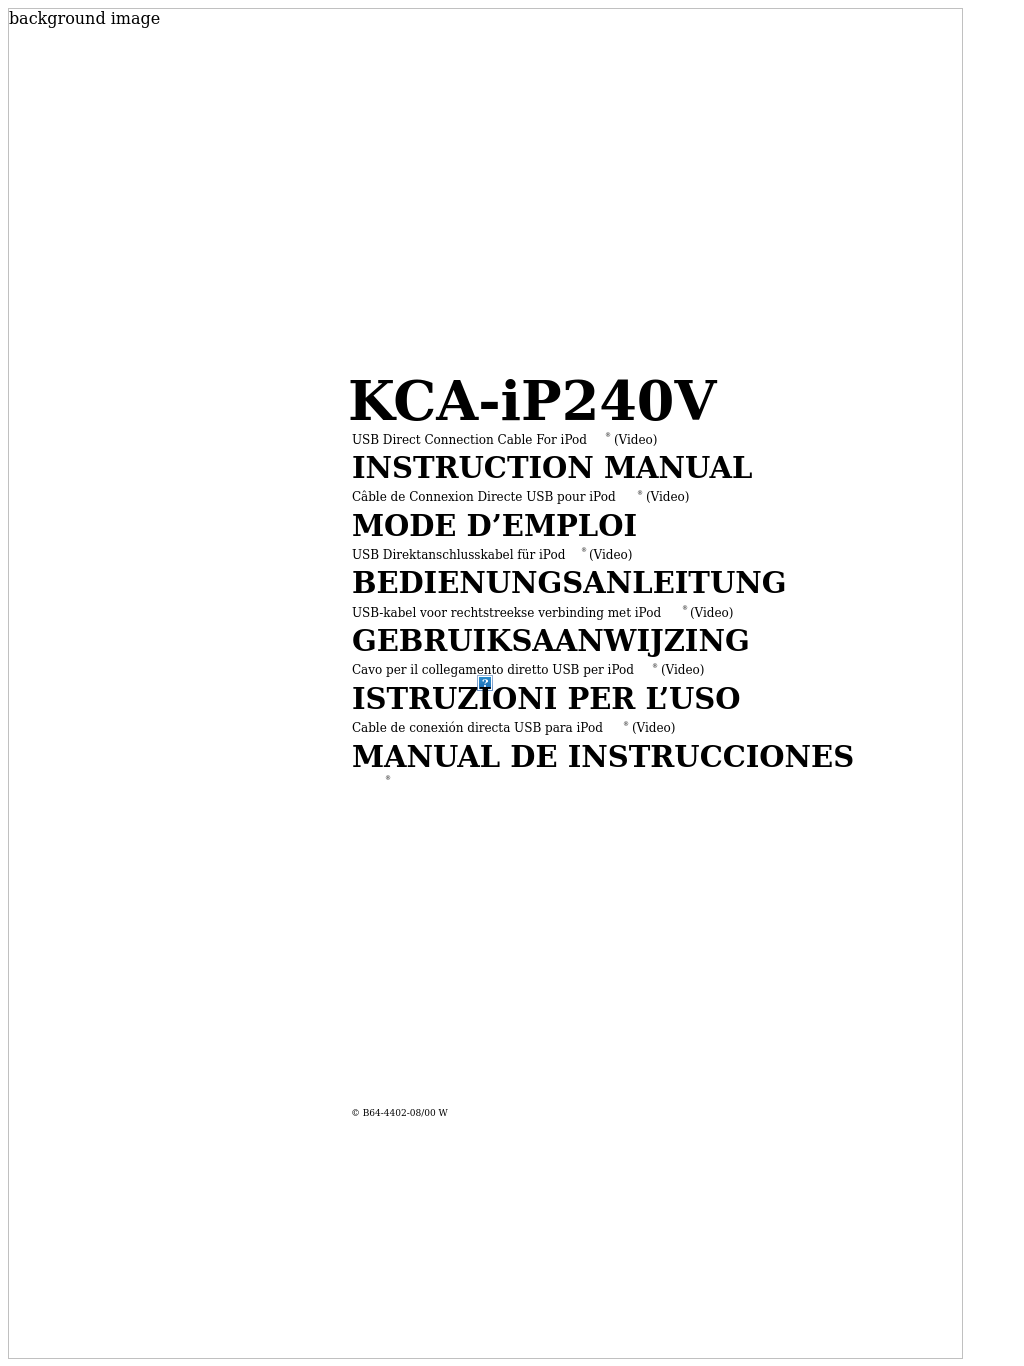 KCA-iP240V